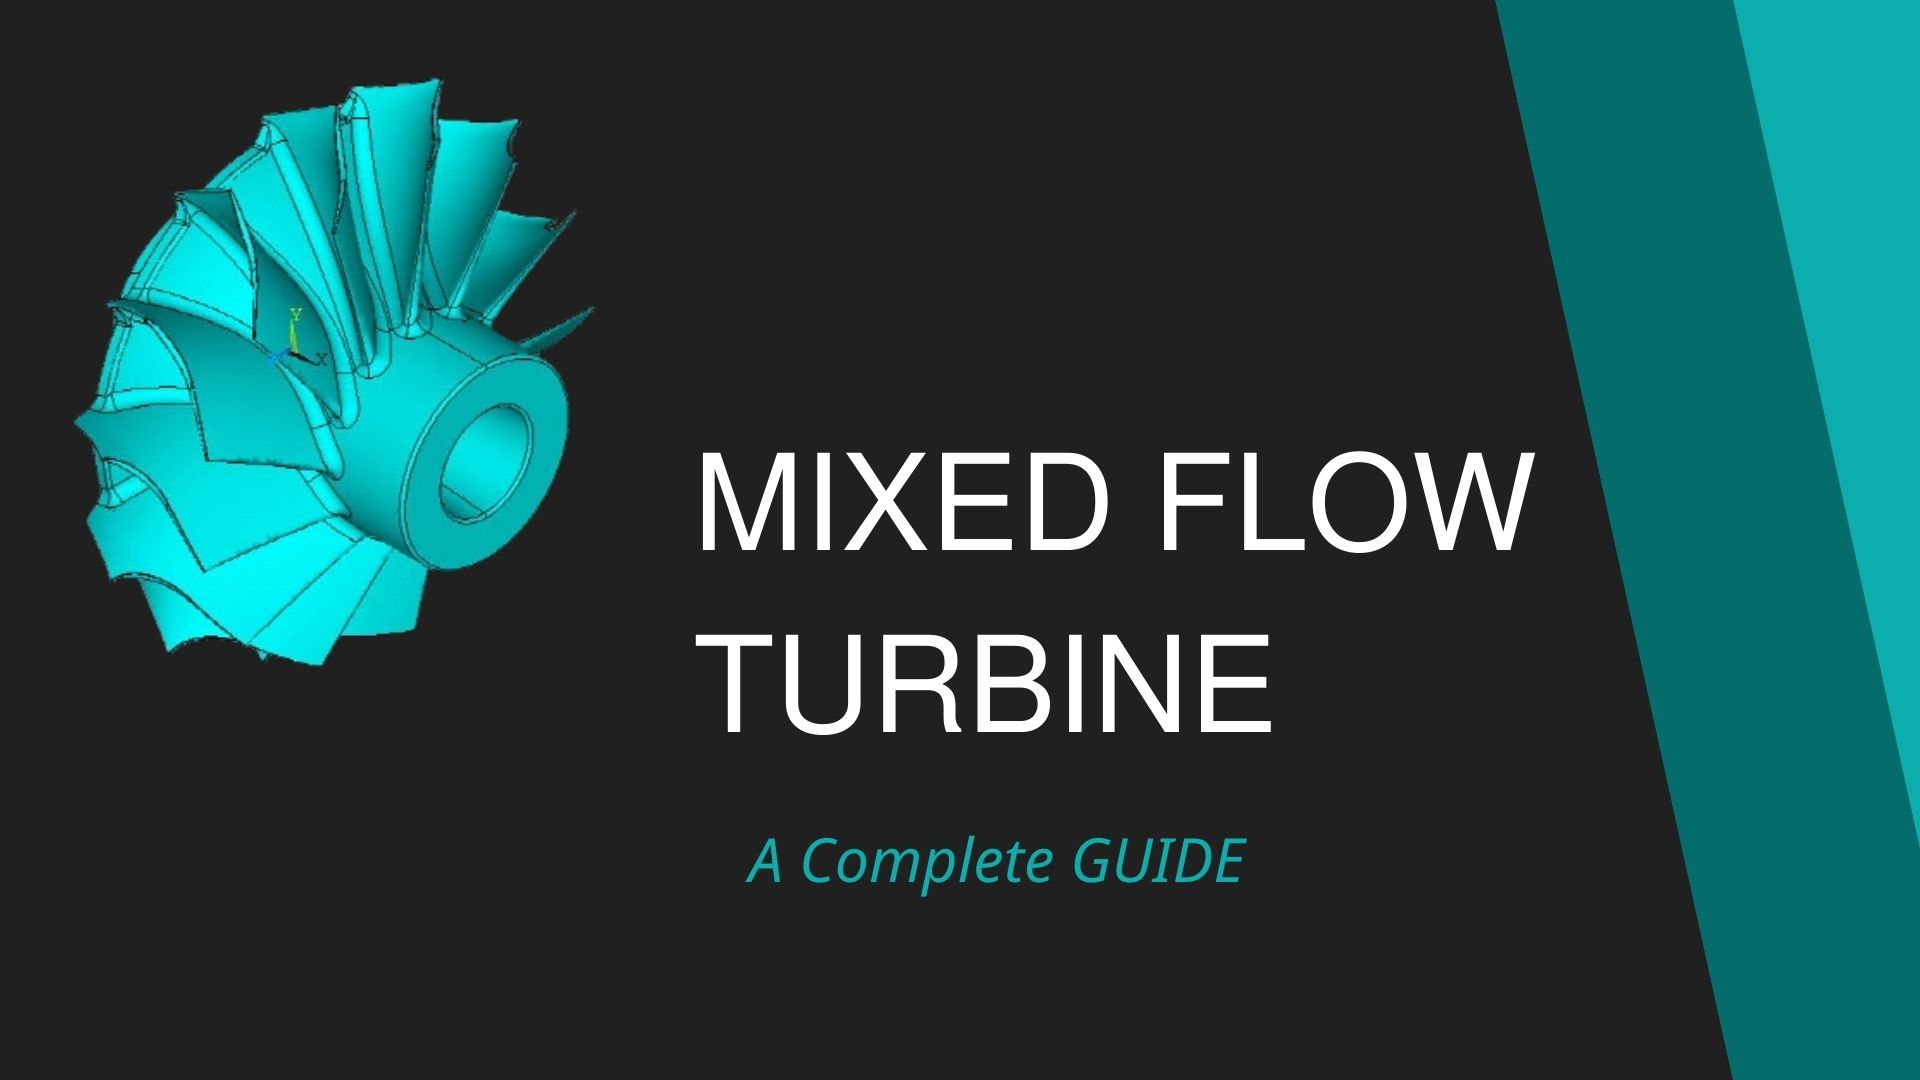 MIXED FLOW TURBINE